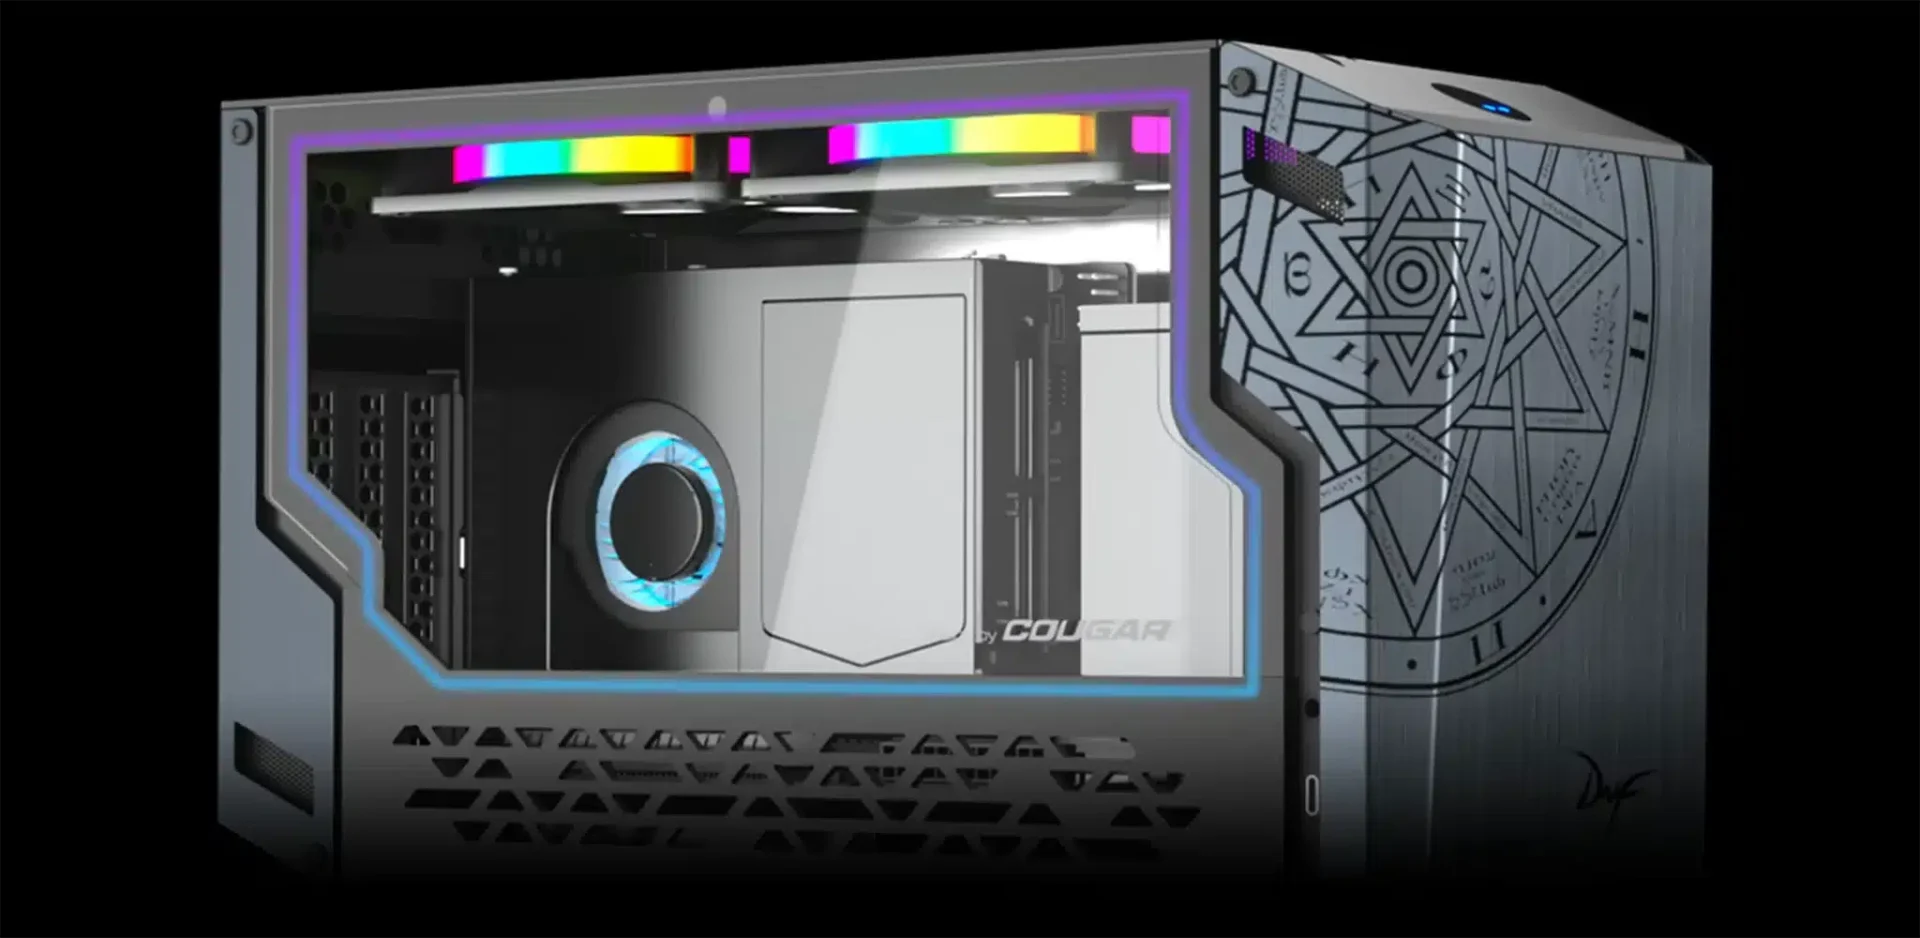 Le fabricant GEEKOM offre jusqu’à 300€ de réduction sur ces puissants Mini PC